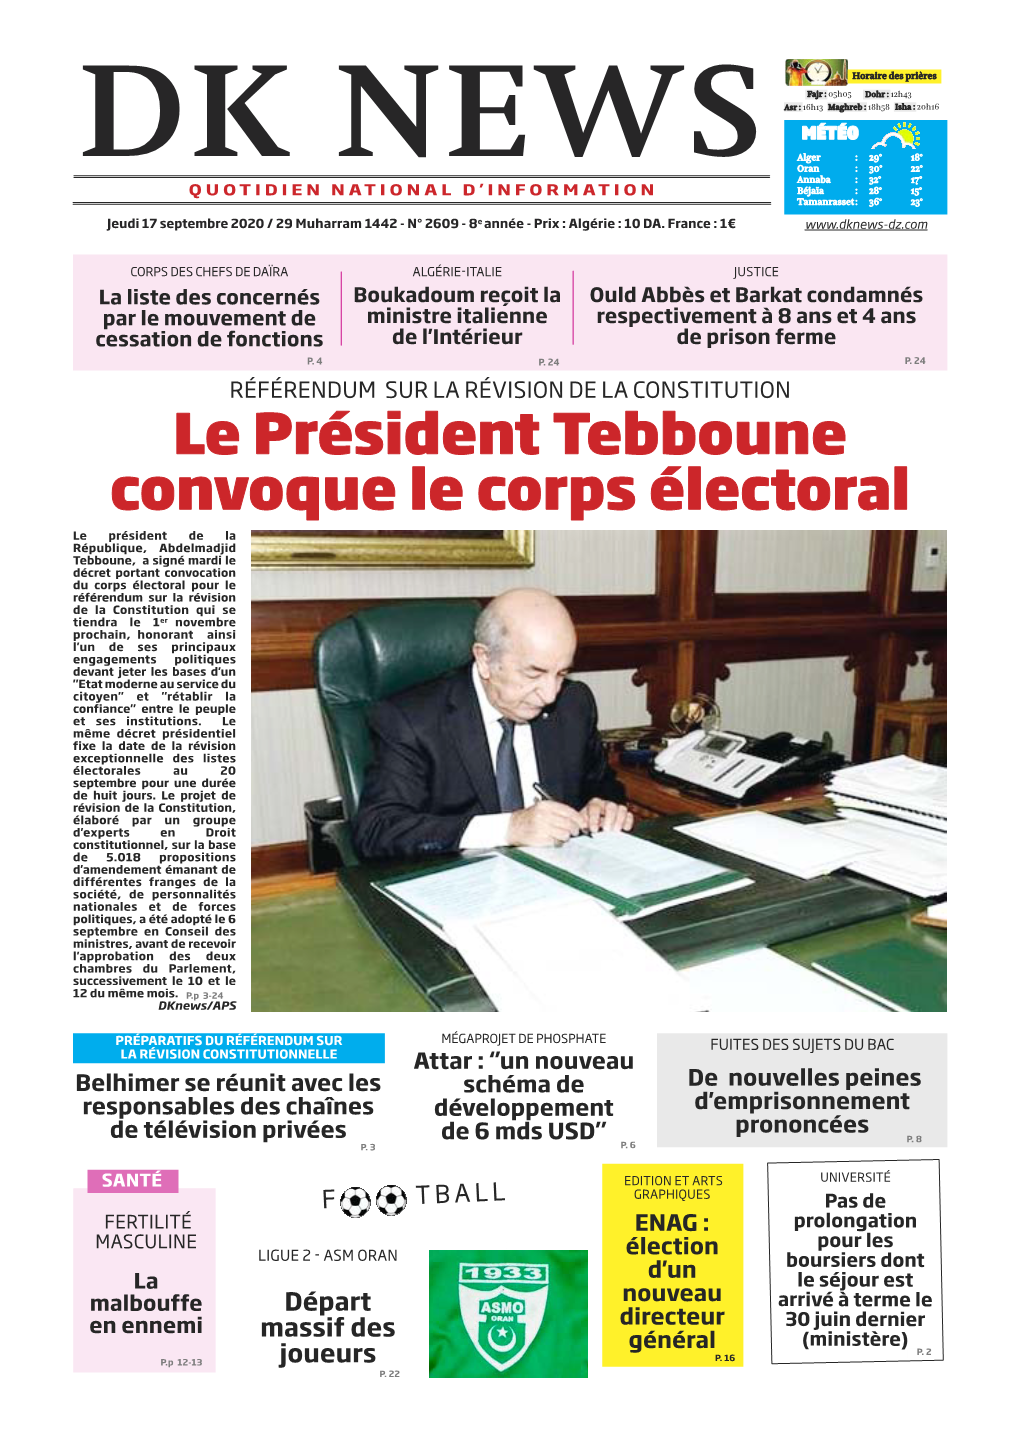 Le Président Tebboune Convoque Le Corps Électoral